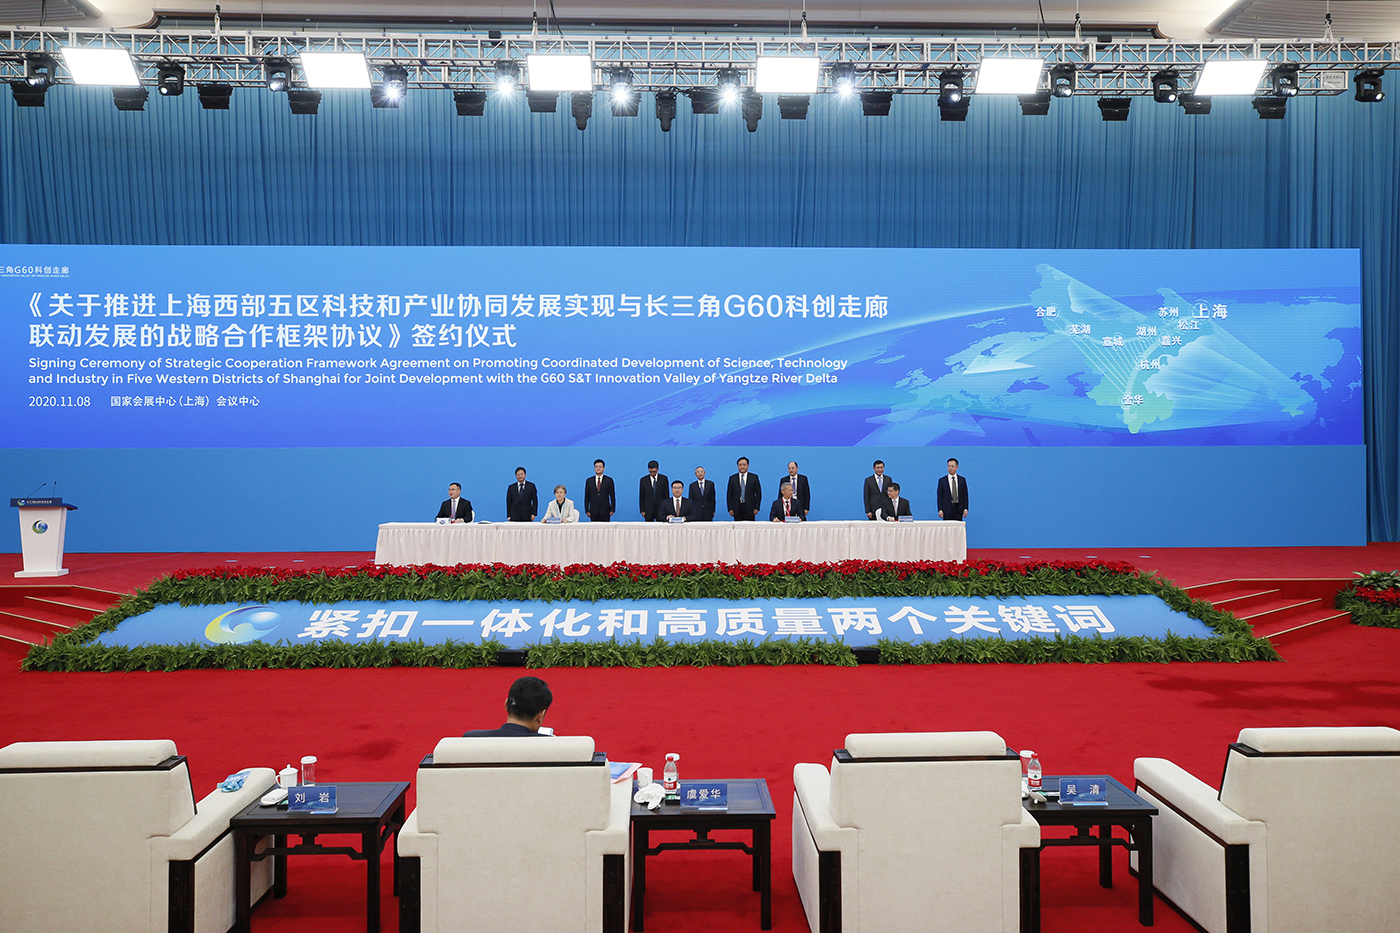 上海西部闵行、嘉定、金山、松江、青浦五区签署《推进上海西部五区科技和产业协同发展实现与长三角G60科